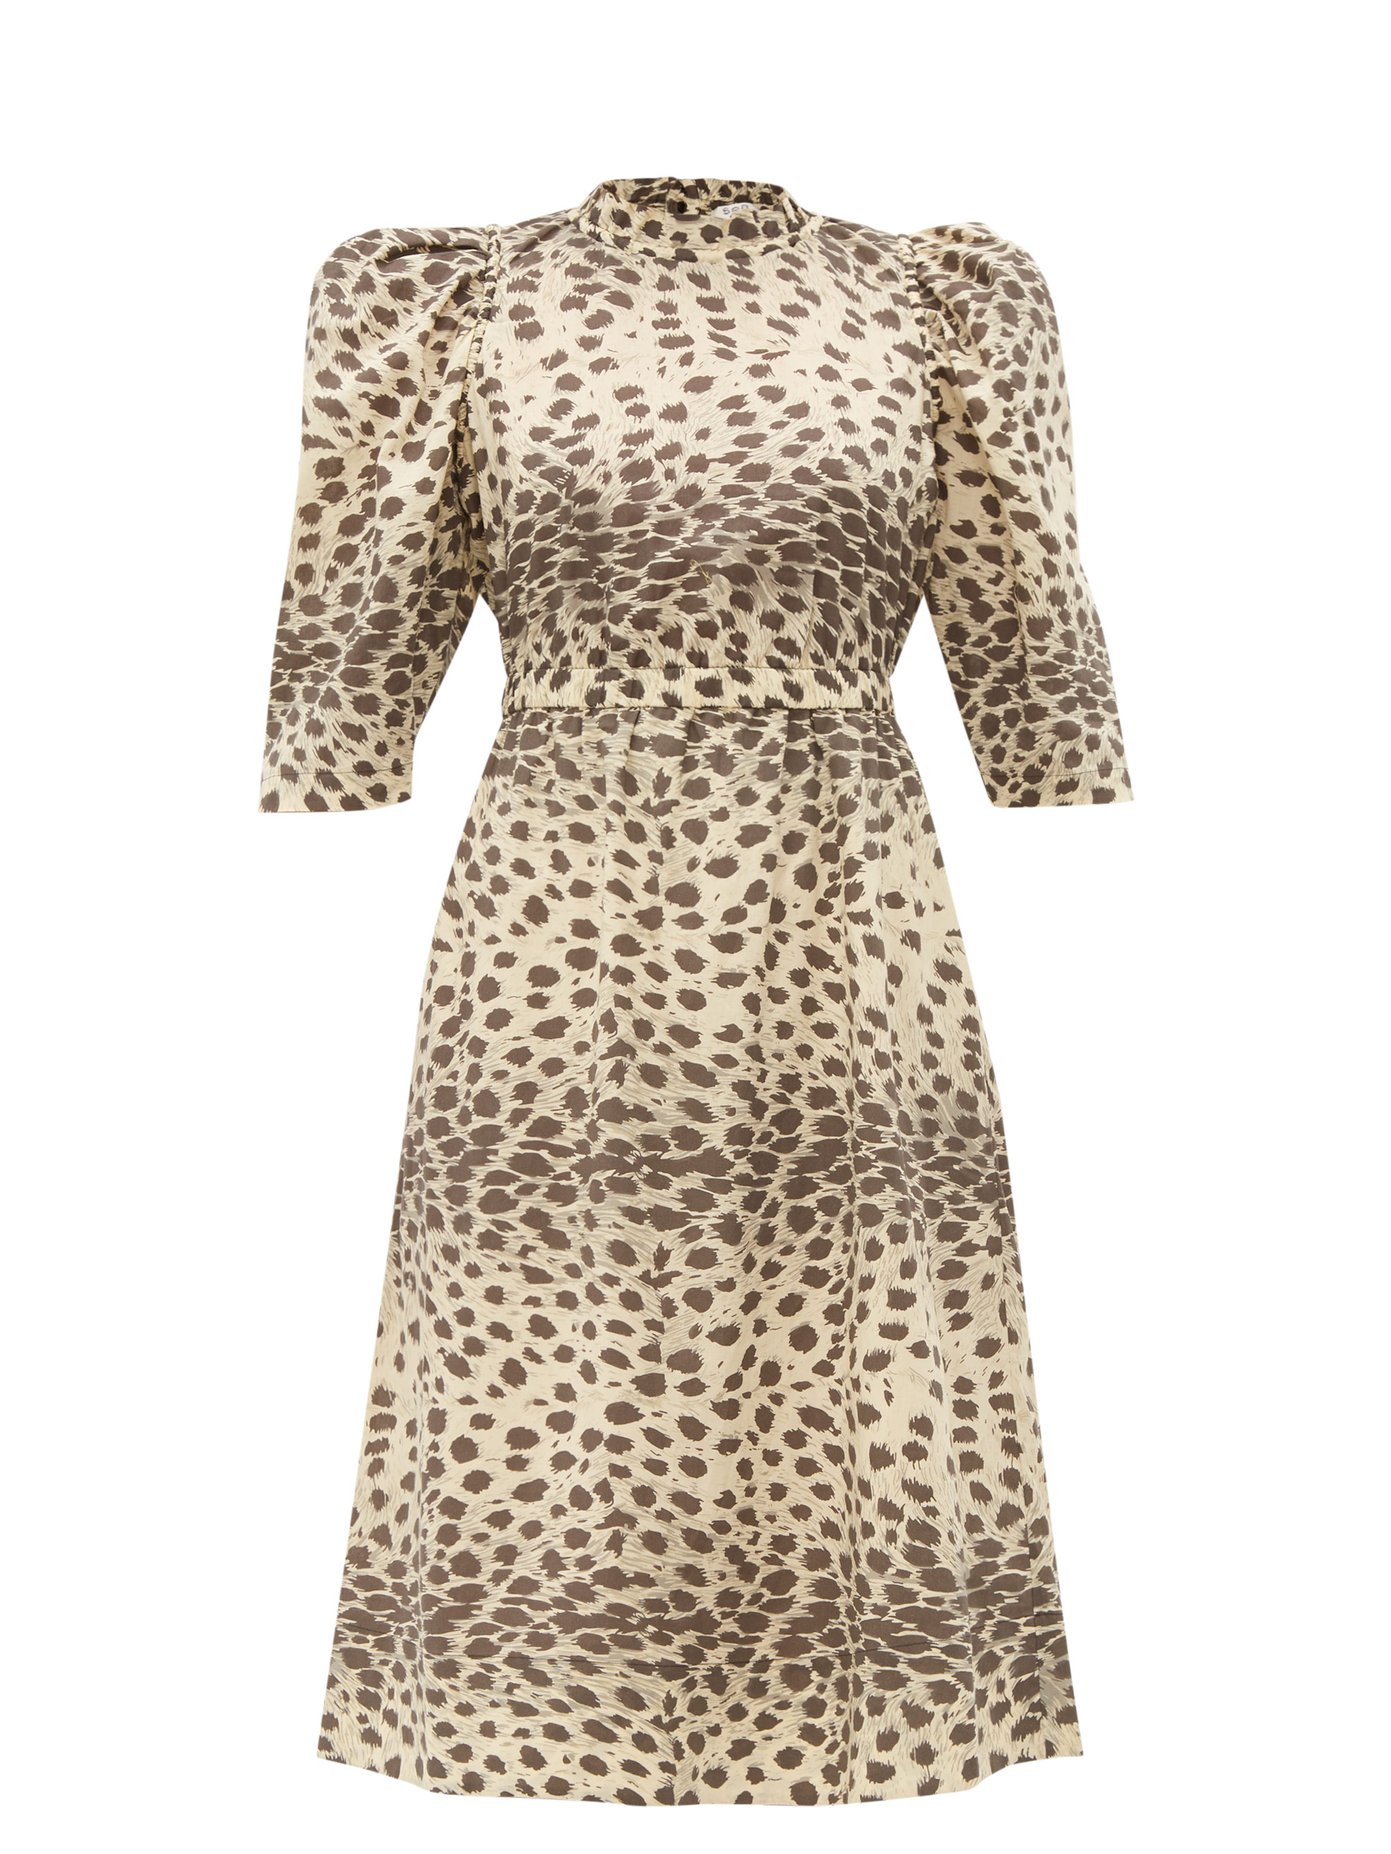 leopard print cotton dress